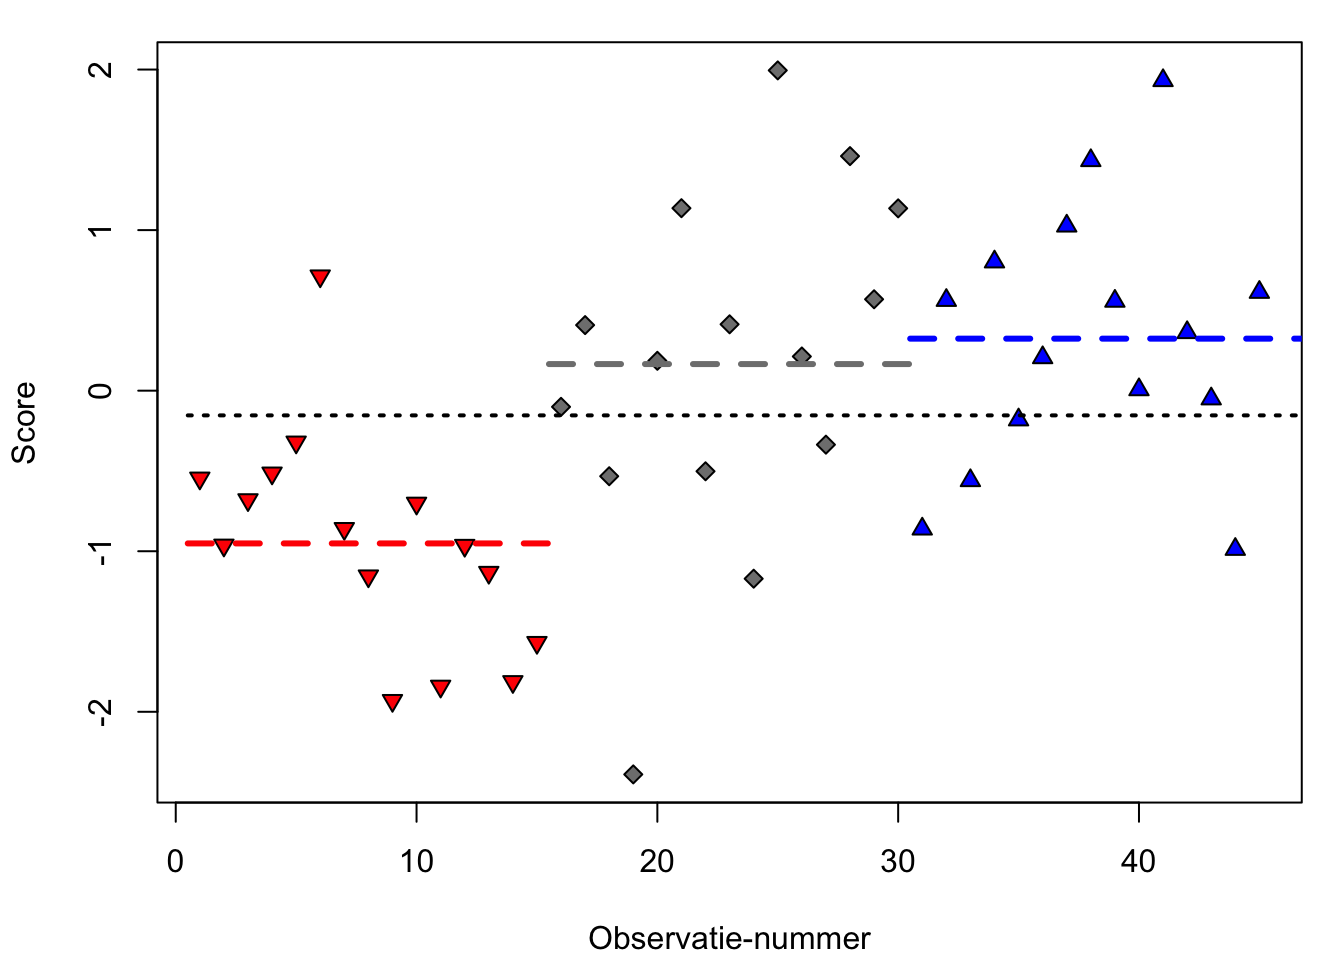 Gesimuleerde observaties van drie experimentele groepen: rood (neerwaartse driehoek), grijs (ruit), en blauw (opwaartse driehoek) (n=15 per groep), met het gemiddelde per groep (in streeplijnen), en met het gemiddelde over alle observaties (stippellijn).